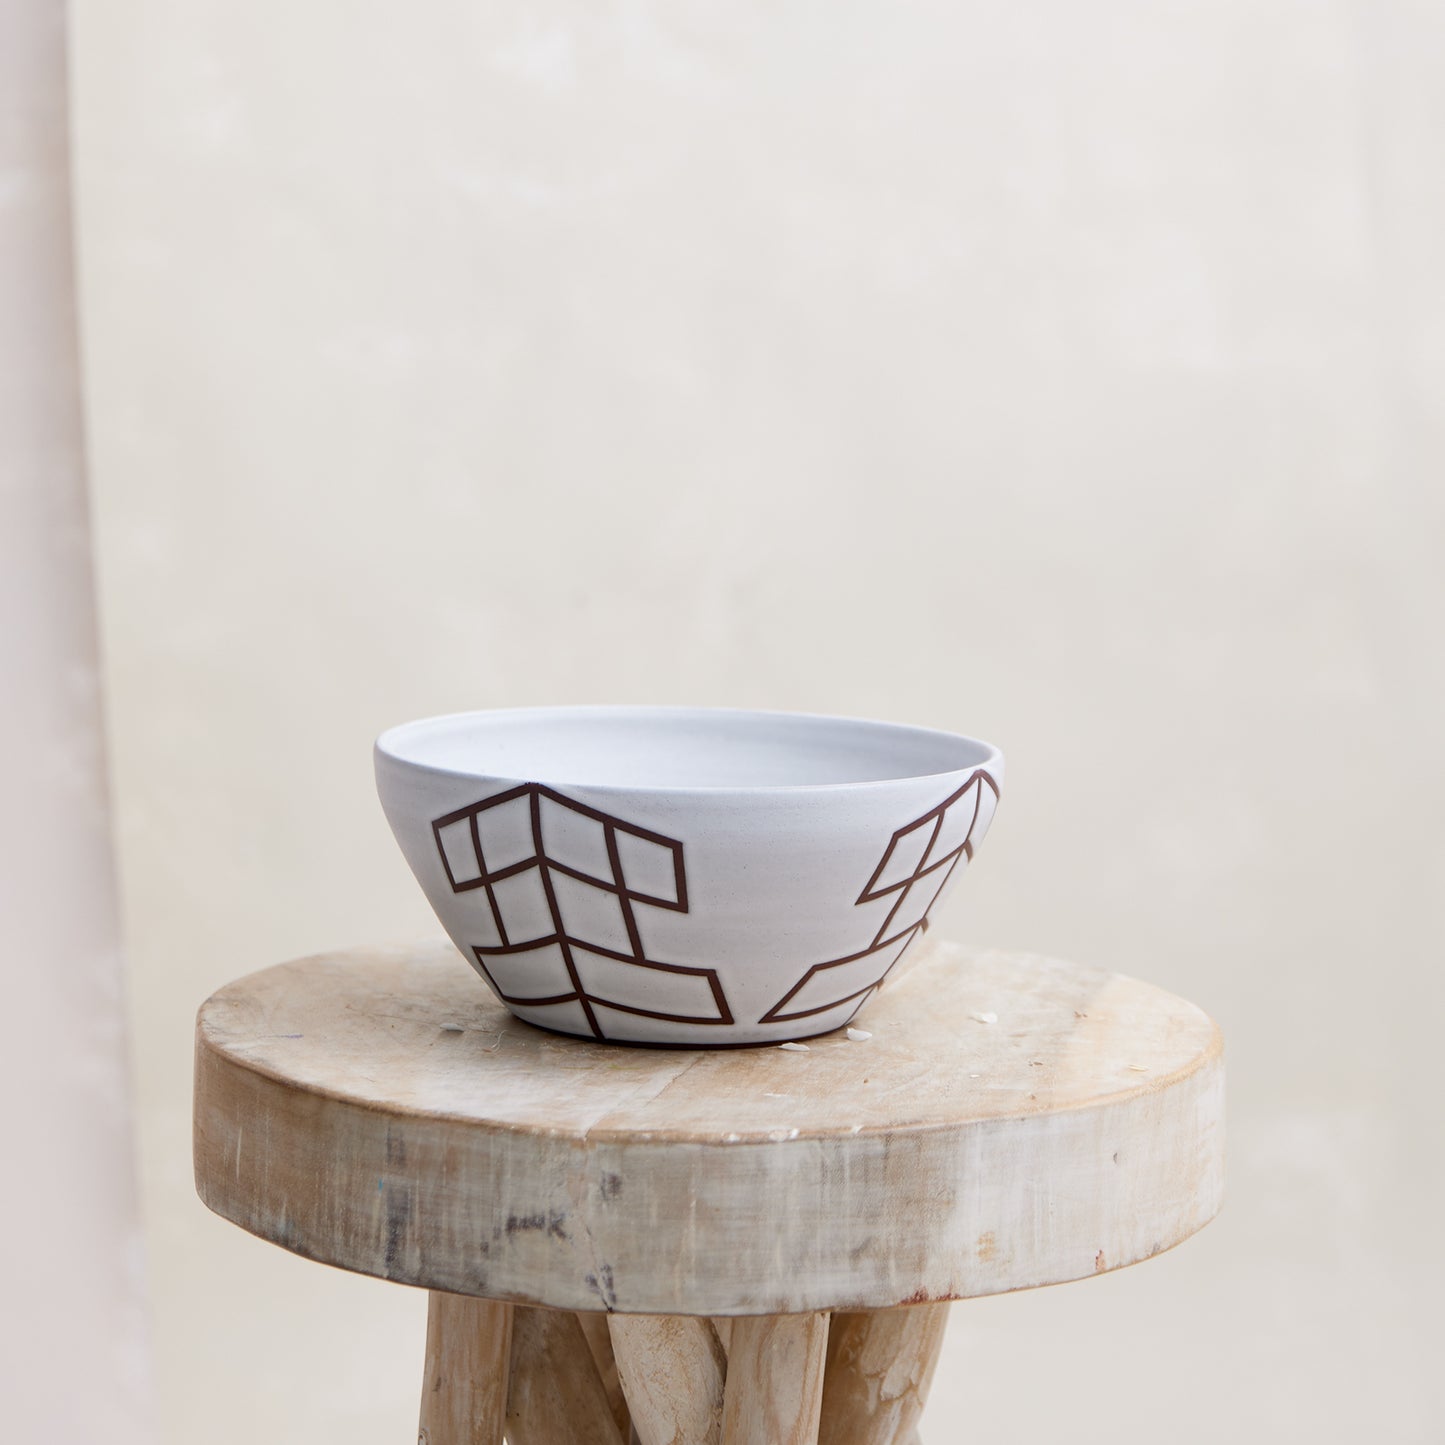 Geometric Handmade Ceramic Bowl - White and Mahogany